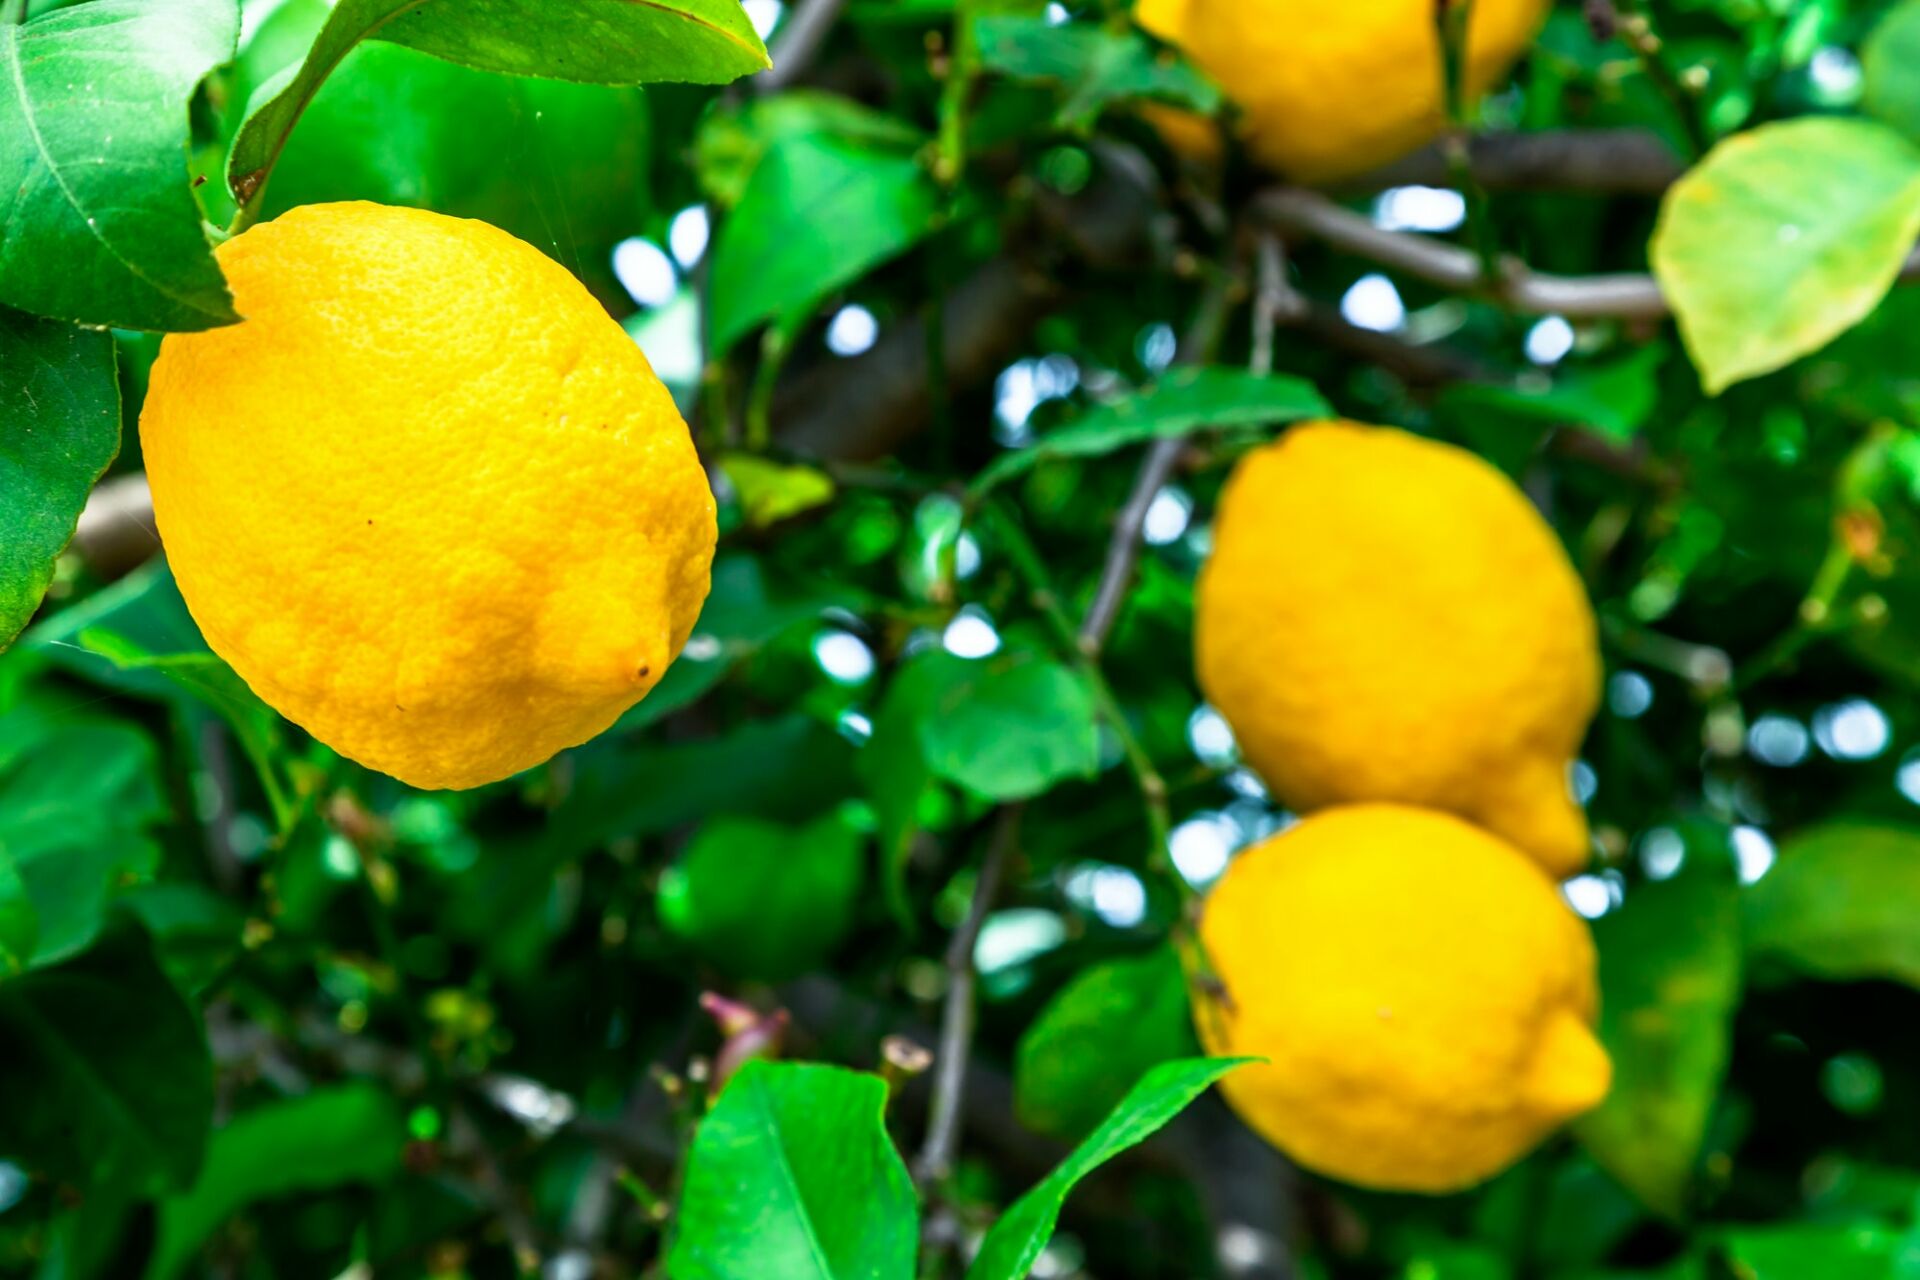 Lemons in a tree